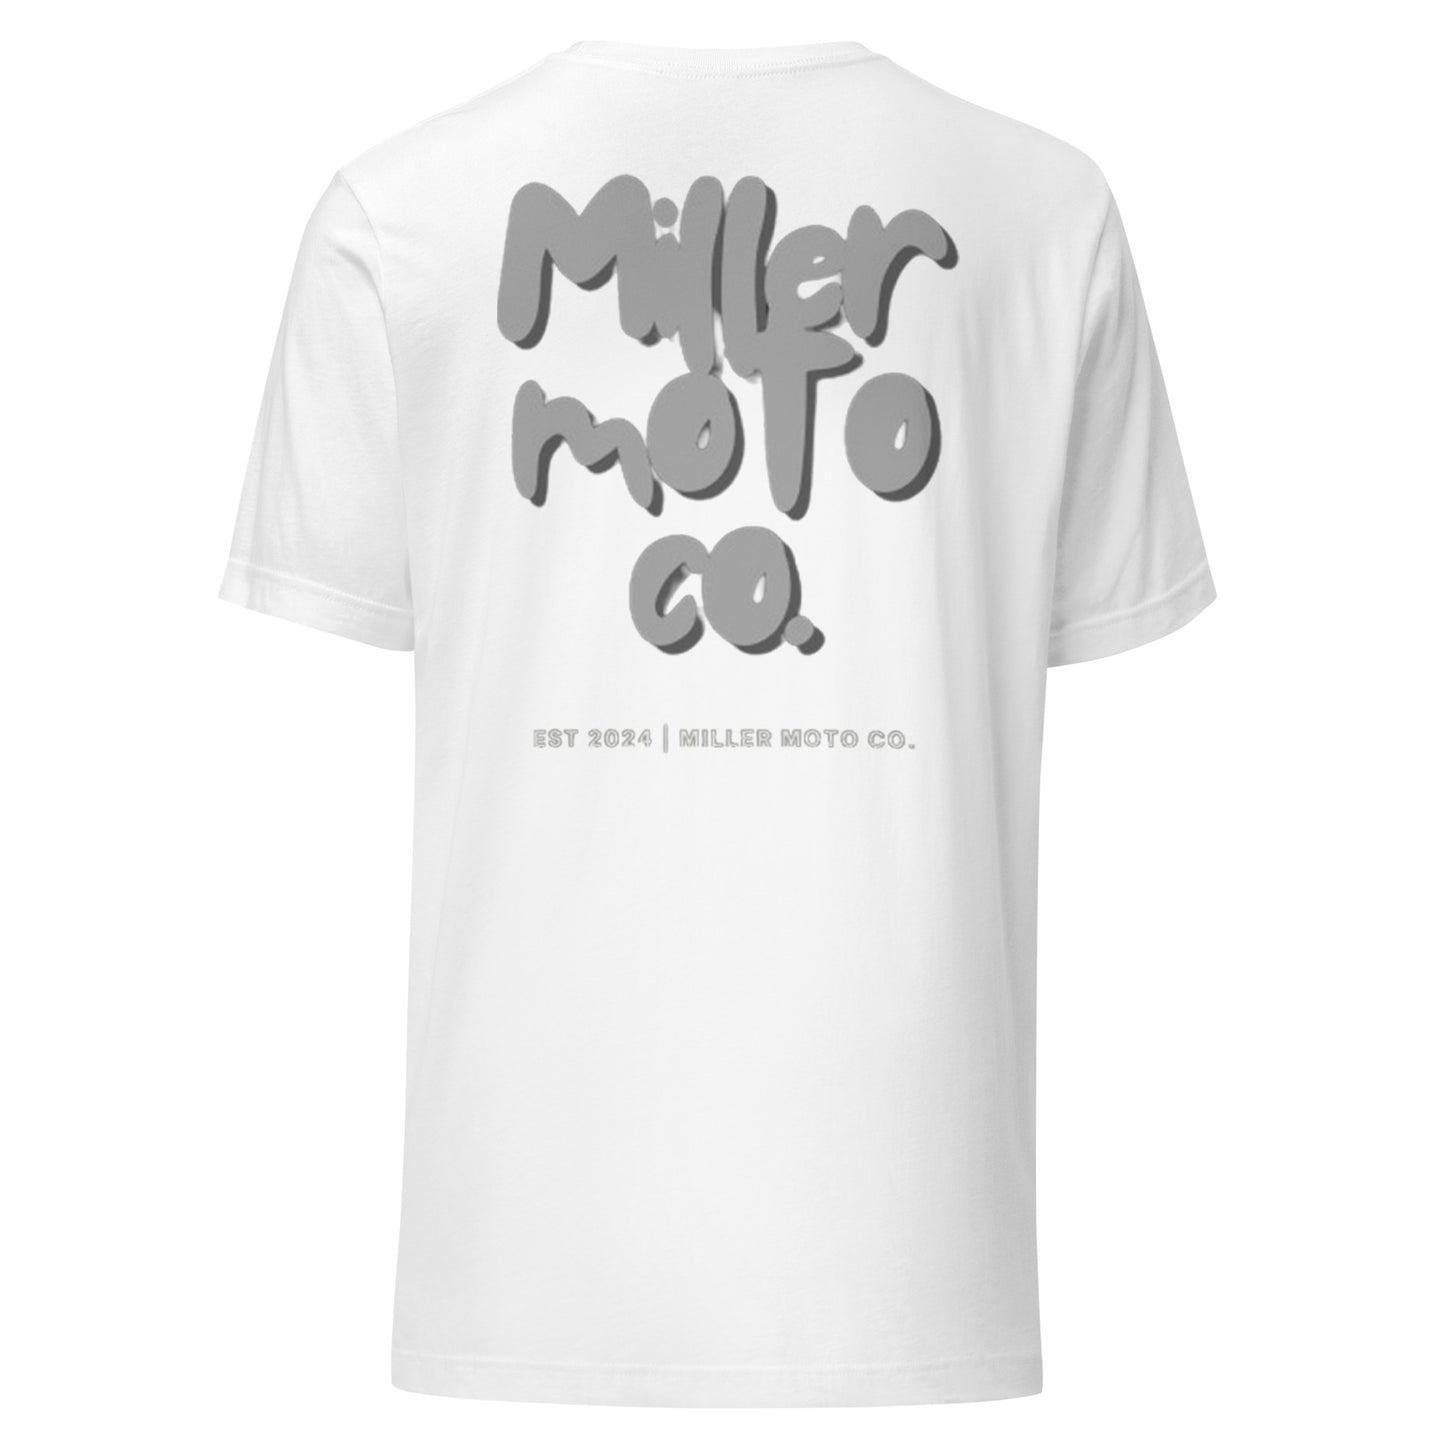 Miller Moto Co. T-Shirt